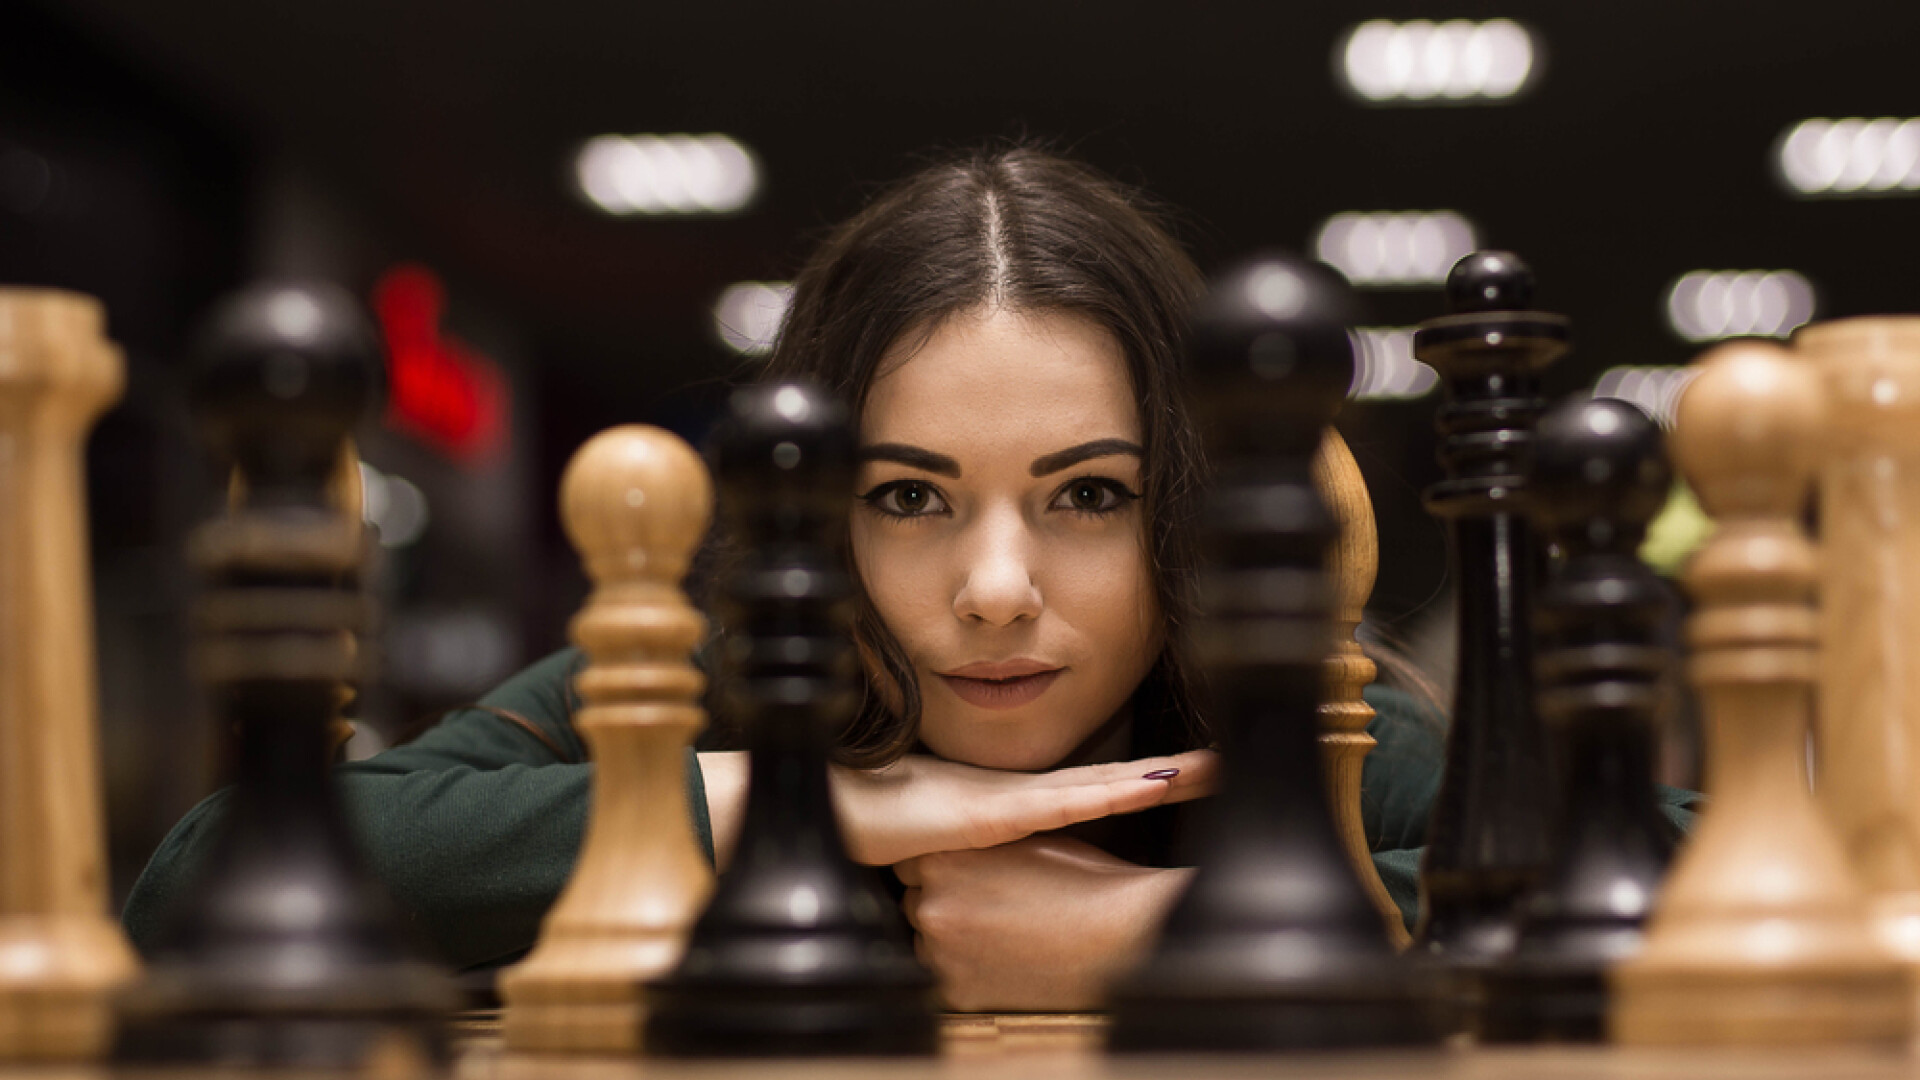 Bărbat deghizat în femeie la o competiție feminiă de șah. A riscat pentru 37.000 de euro